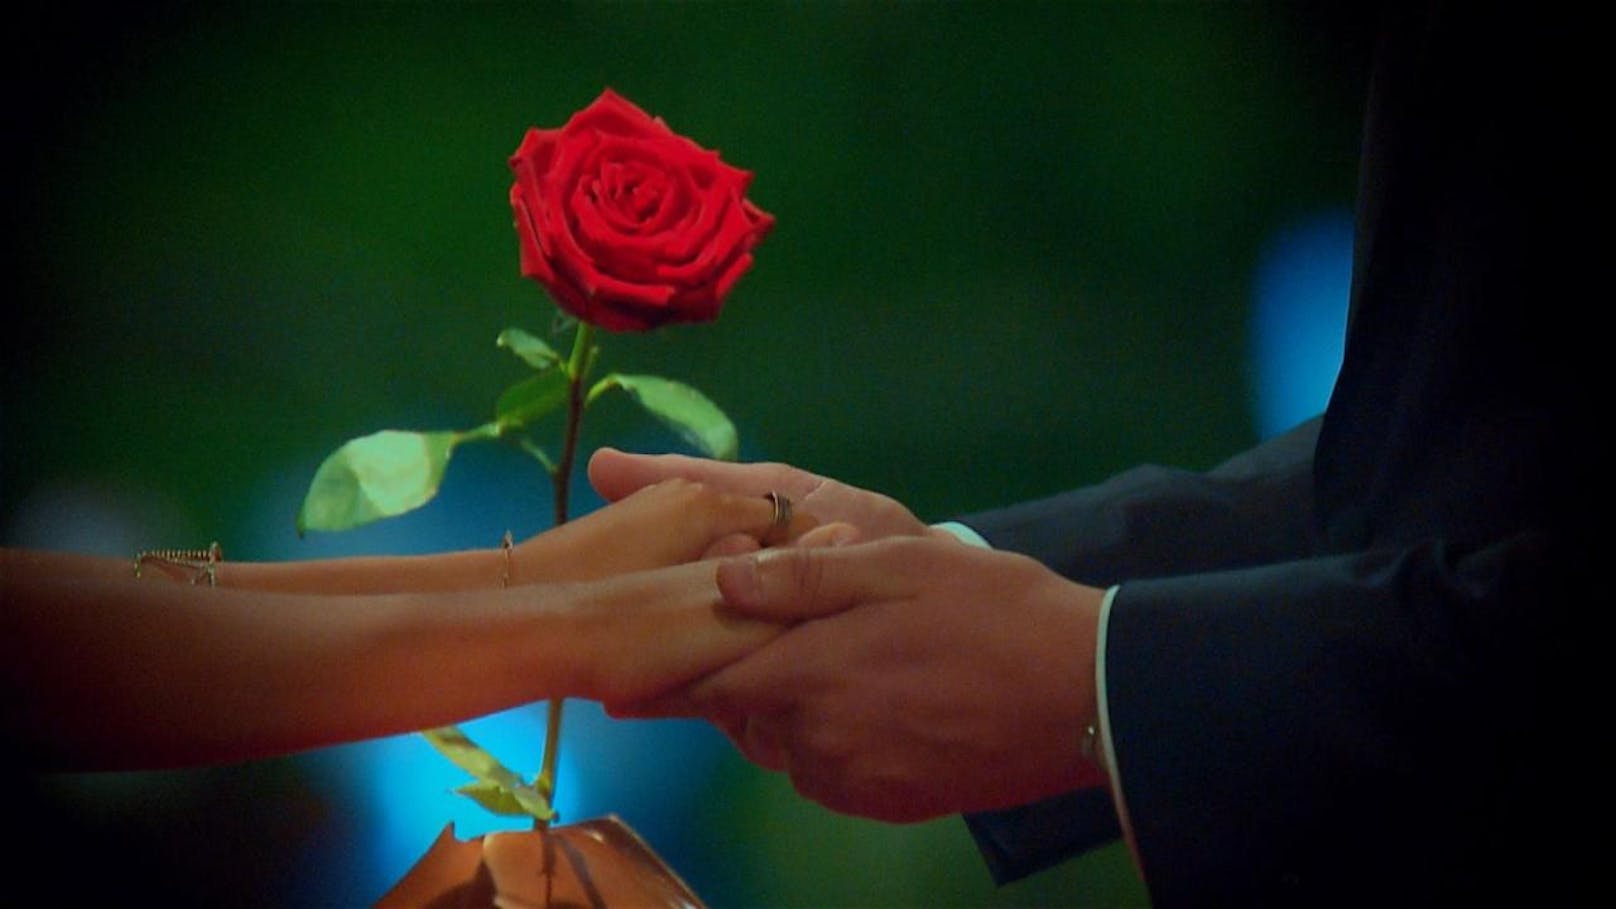 Wem wird der Bachelor die letzte Rose überreichen - Kristina oder Svenja?